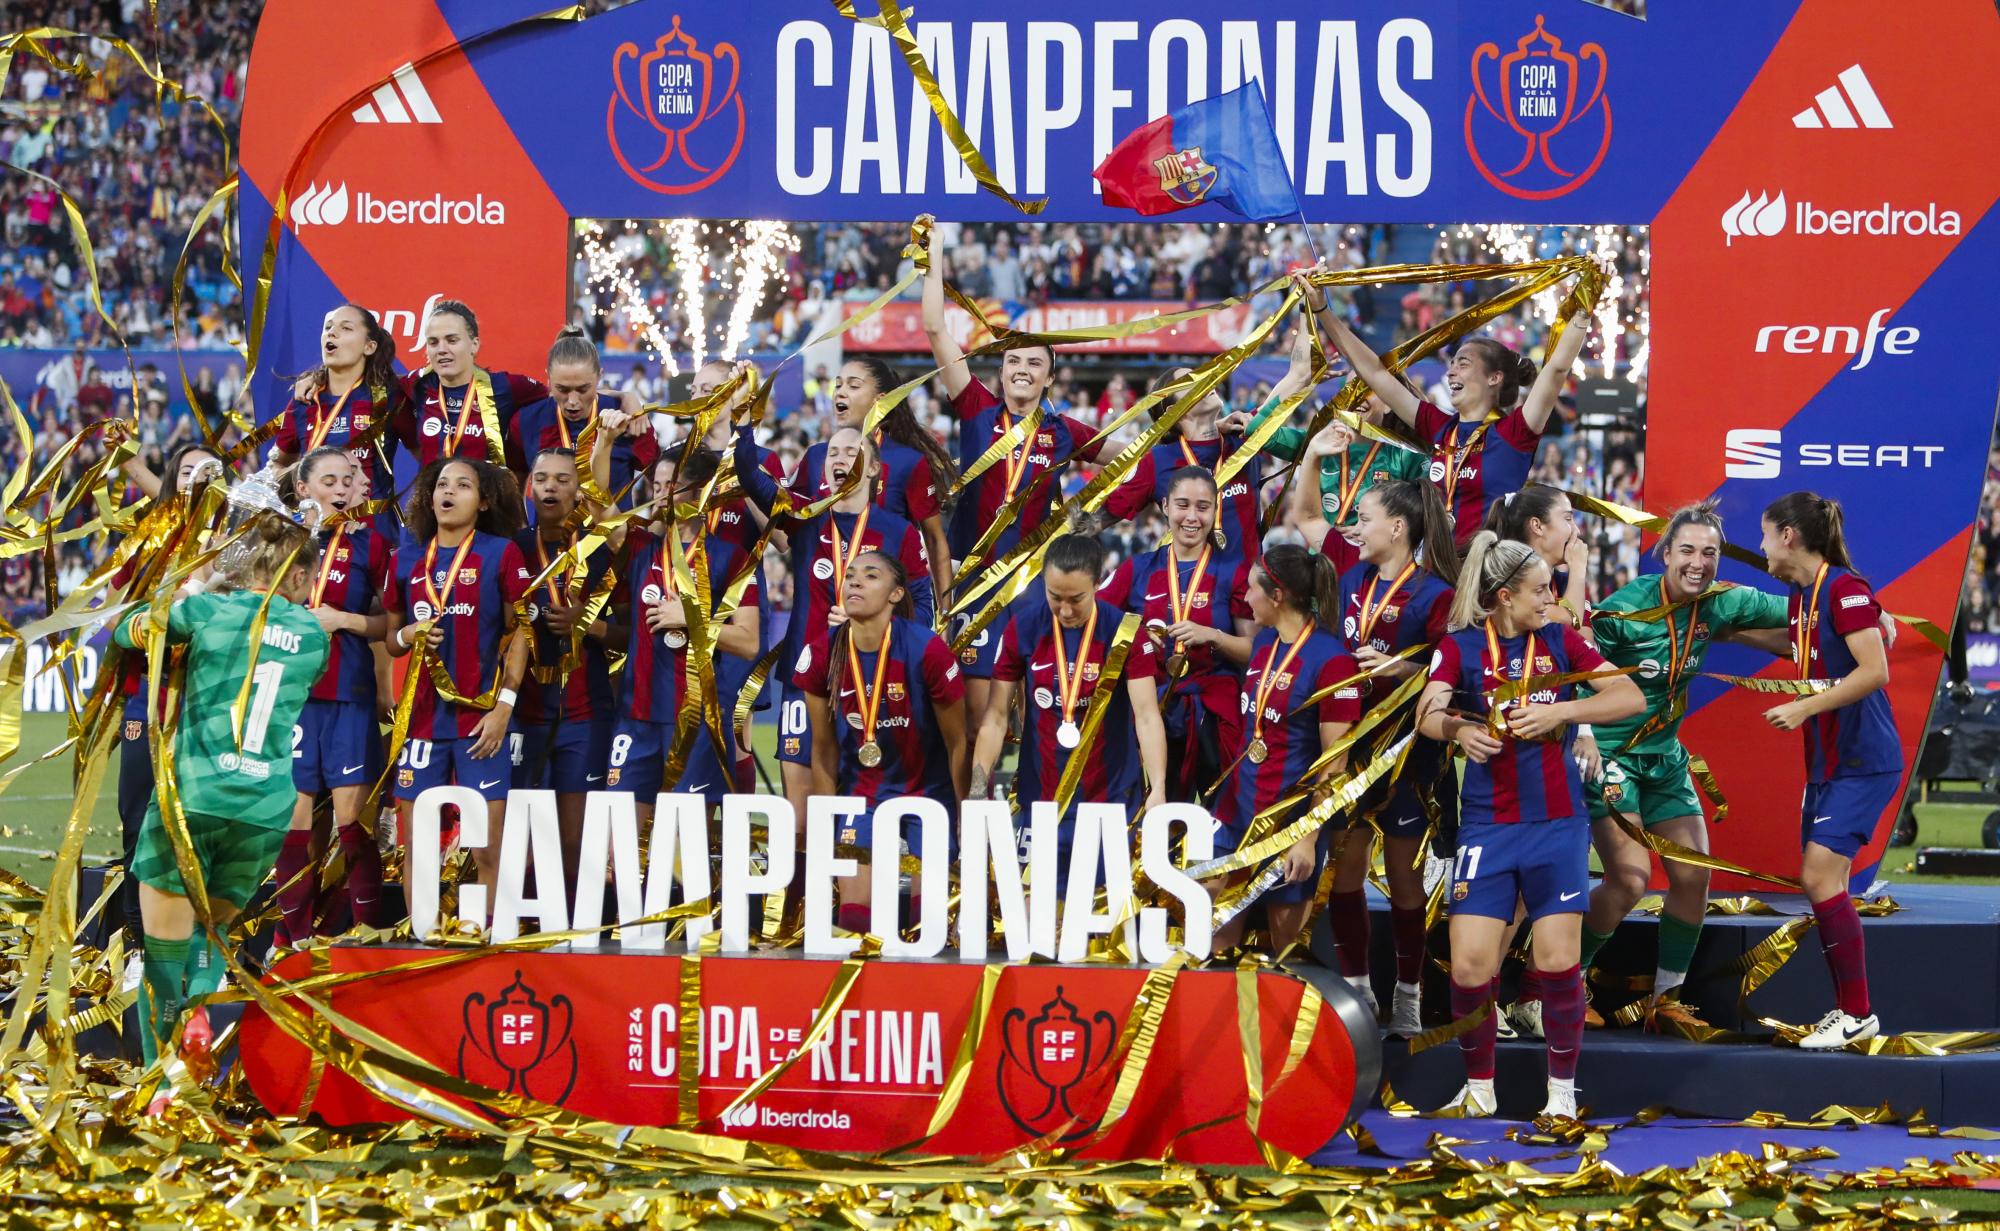 El Barcelona Femenino ha logrado un impresionante triplete de títulos españoles tras conquistar la Copa de la Reina al aplastar a la Real Sociedad con un contundente 8-0 en Zaragoza. Con este triunf